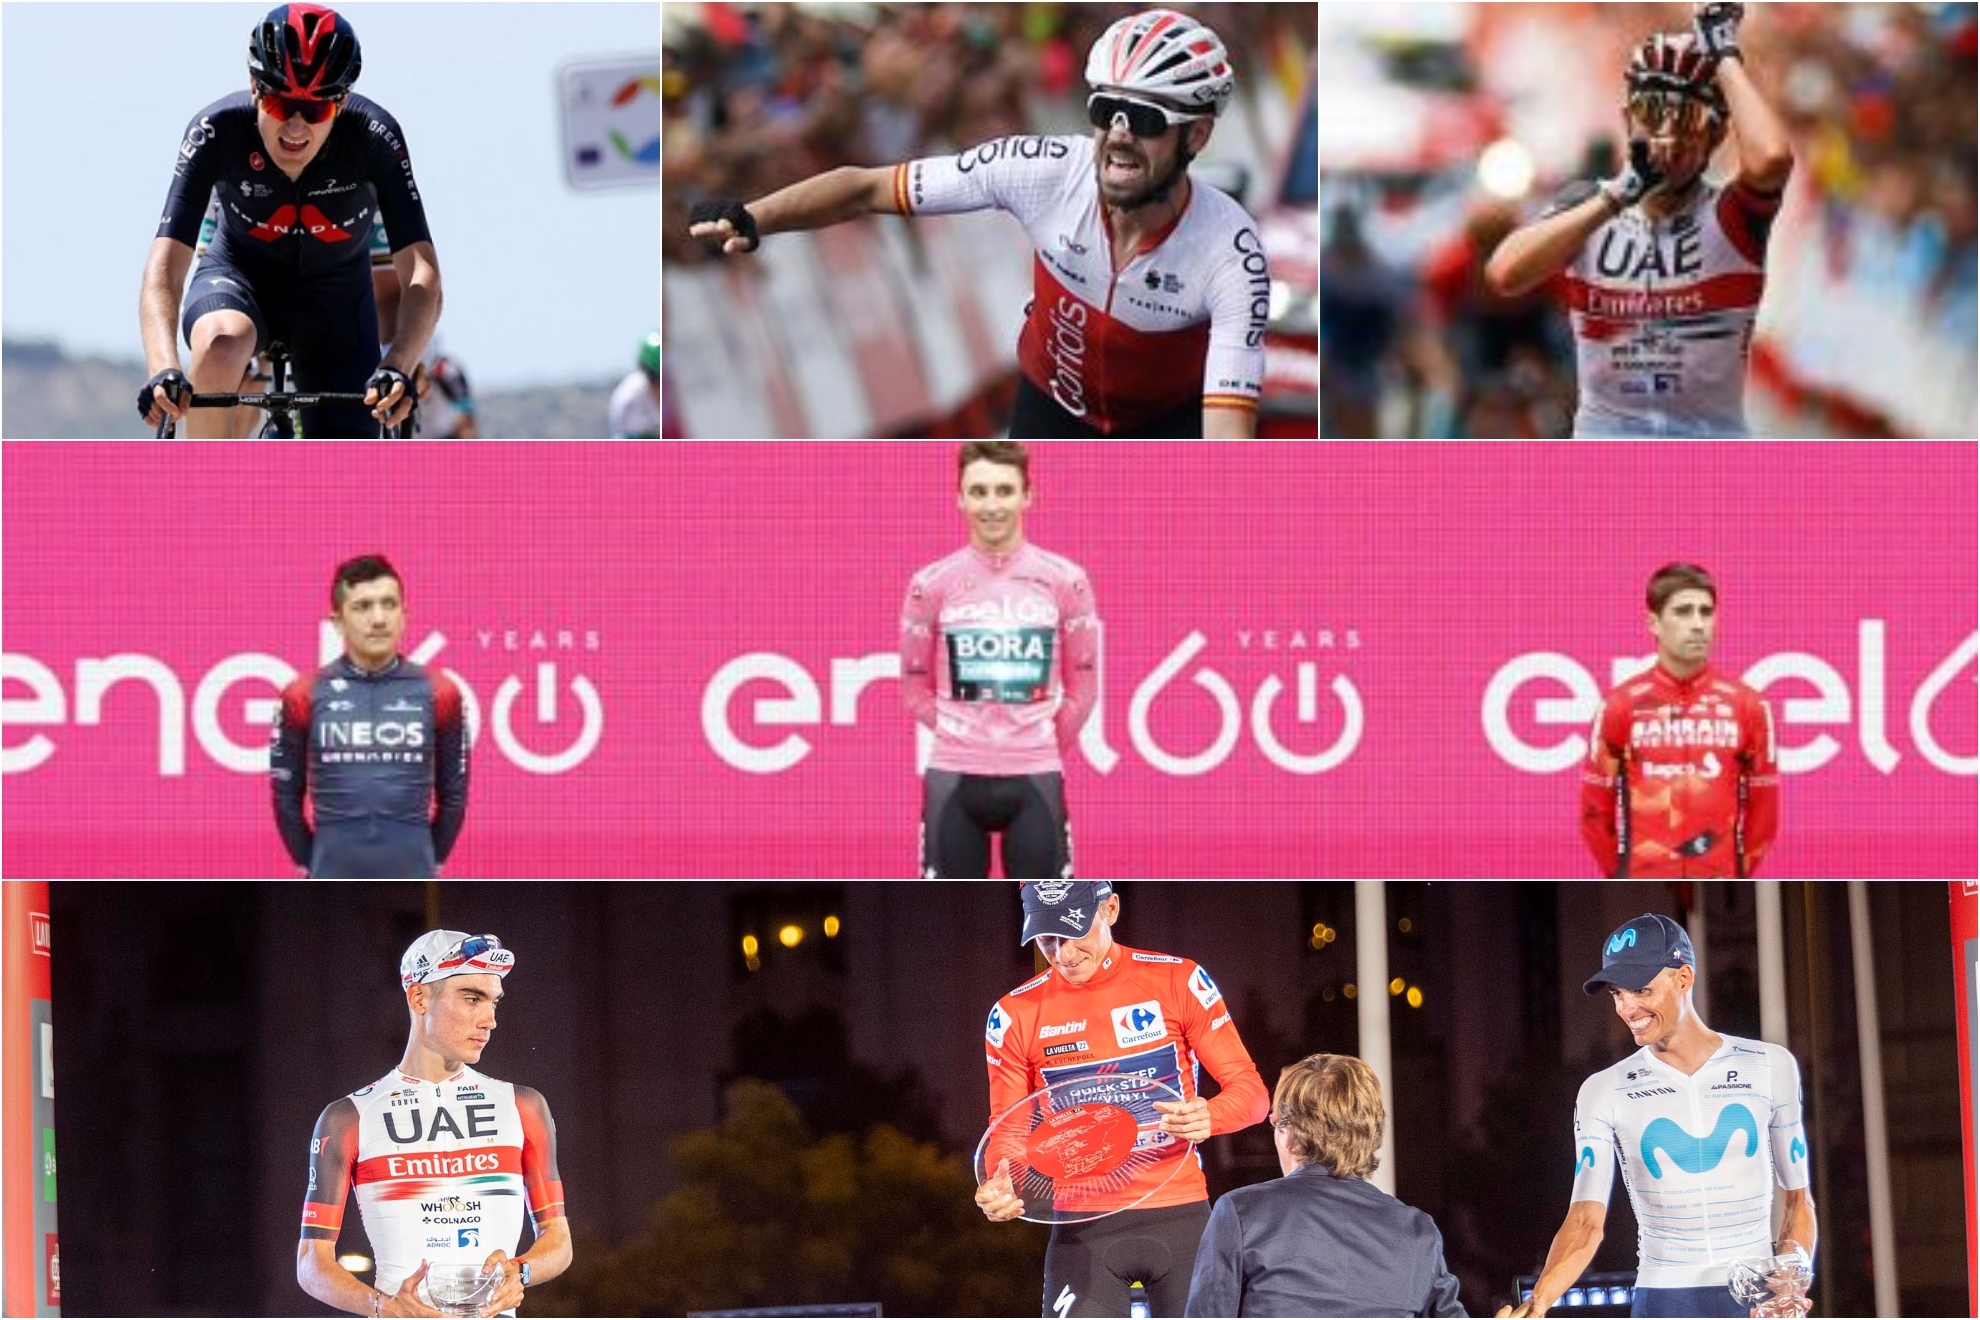 El despertar del ciclismo español: Del podio de Landa al de Mas y Ayuso pasando por los éxitos parciales